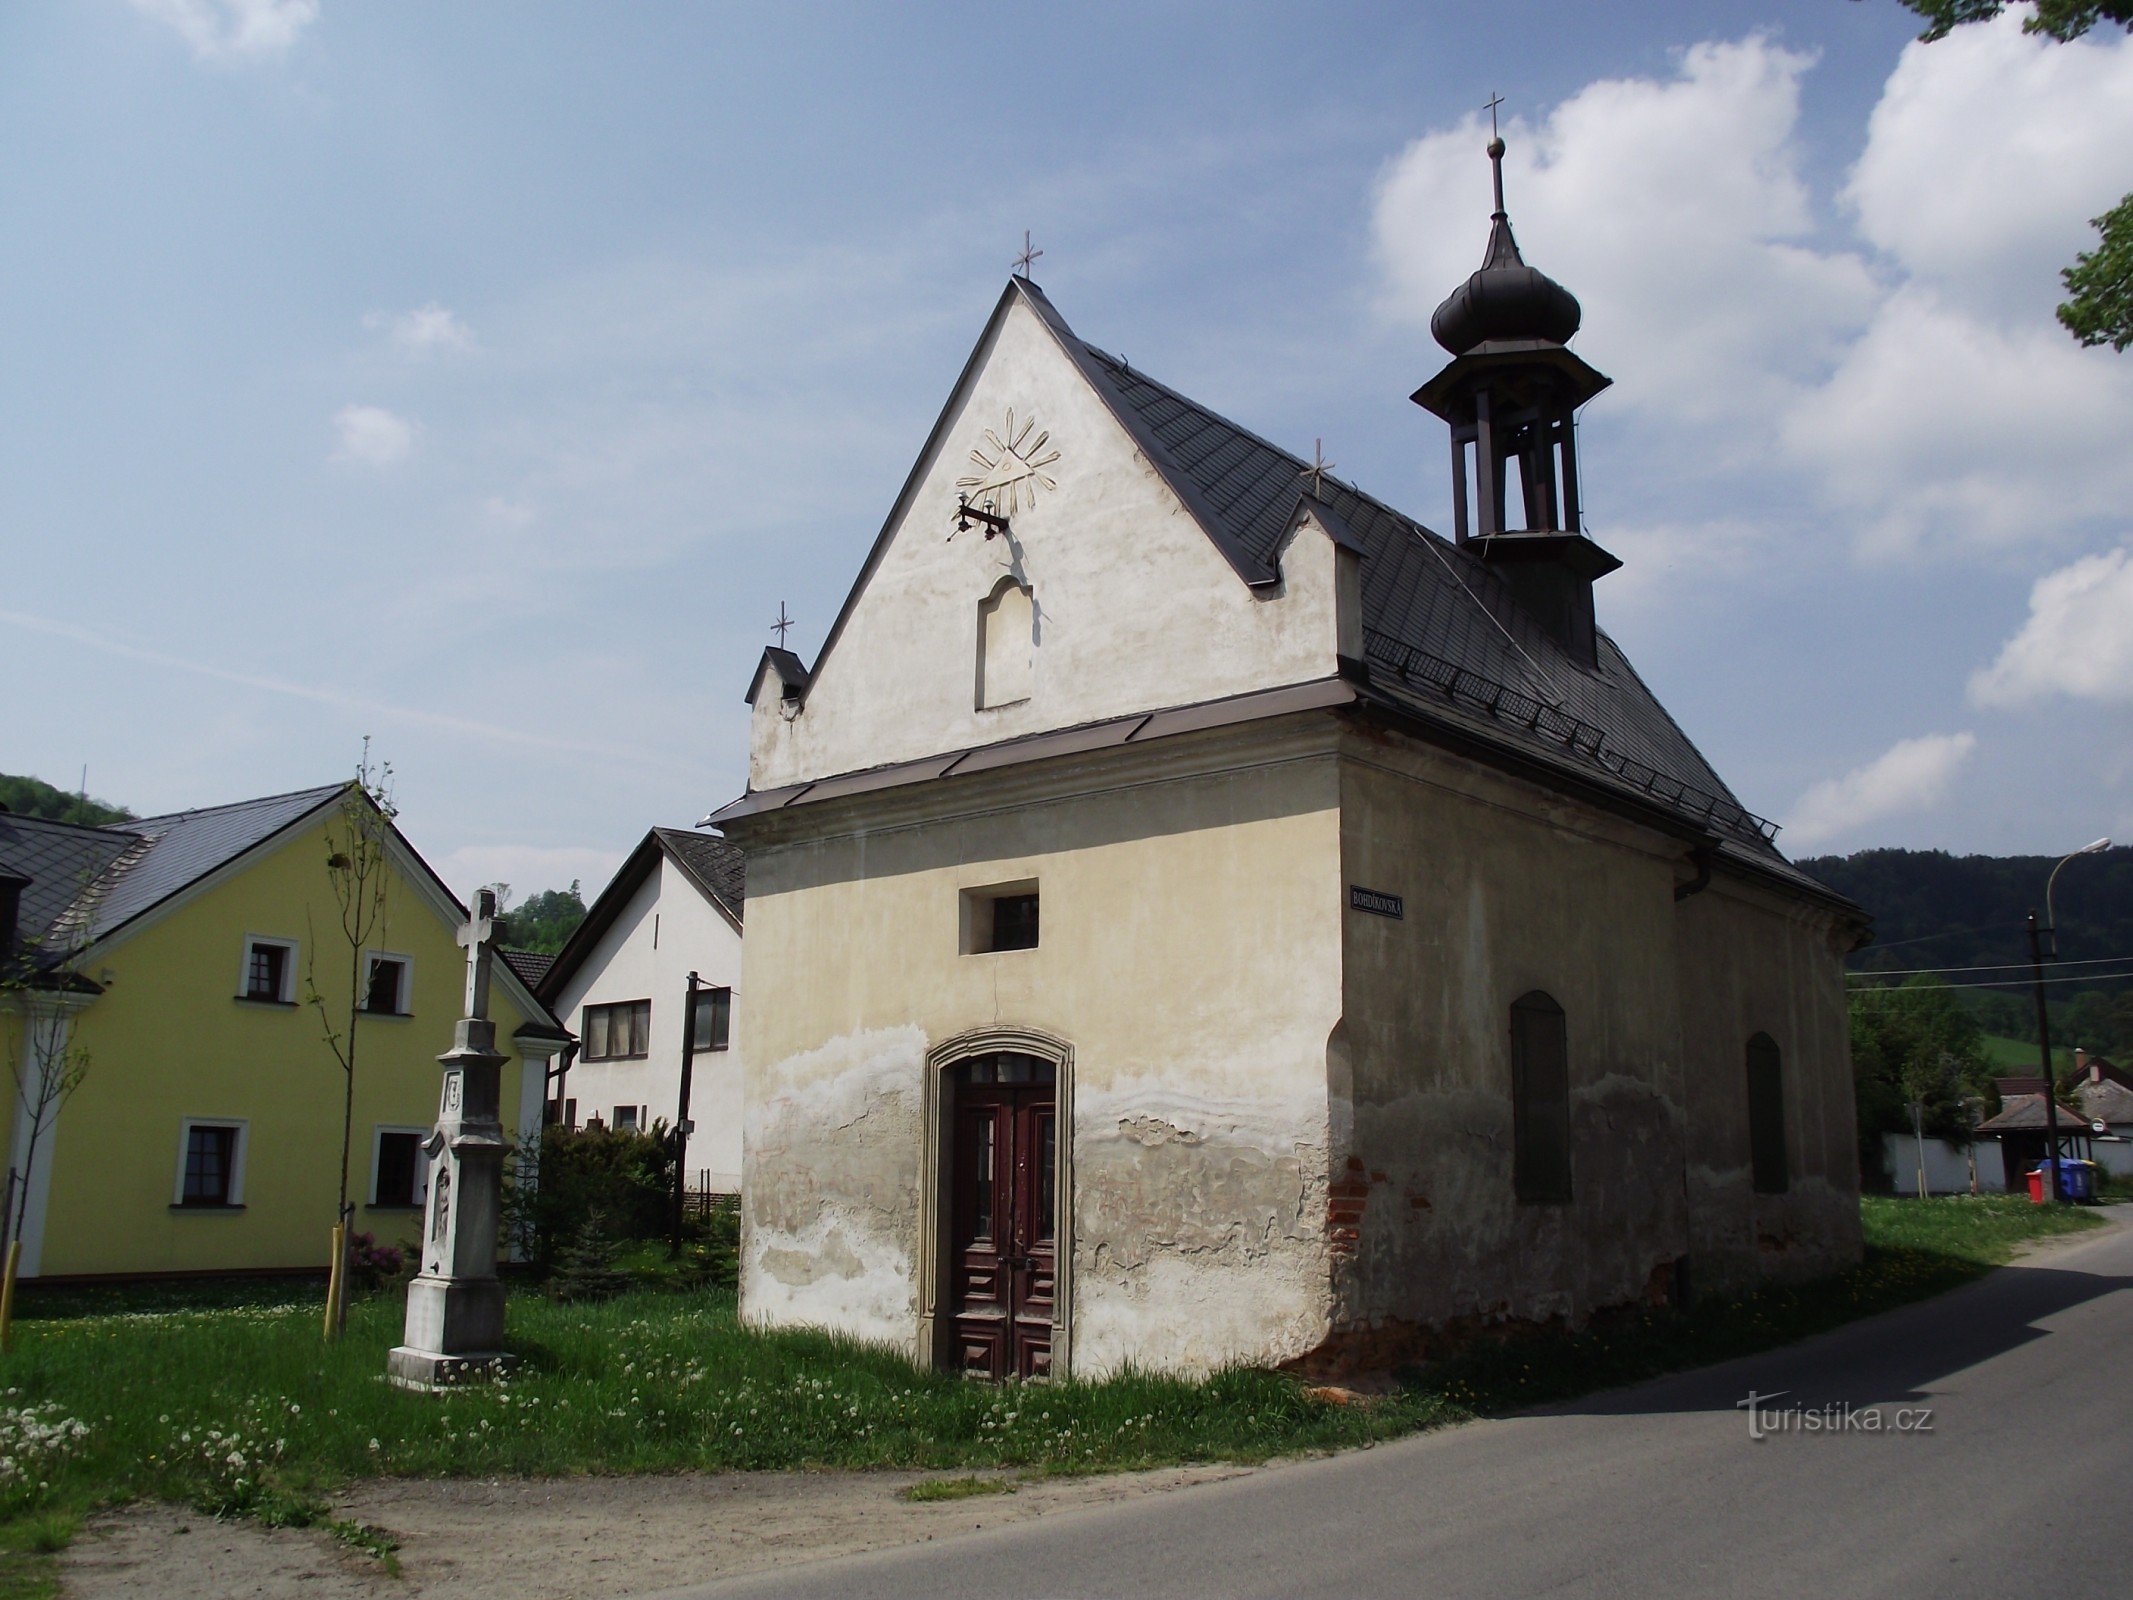 Horní Temenice – Pyhän Nikolauksen kappeli. Anne